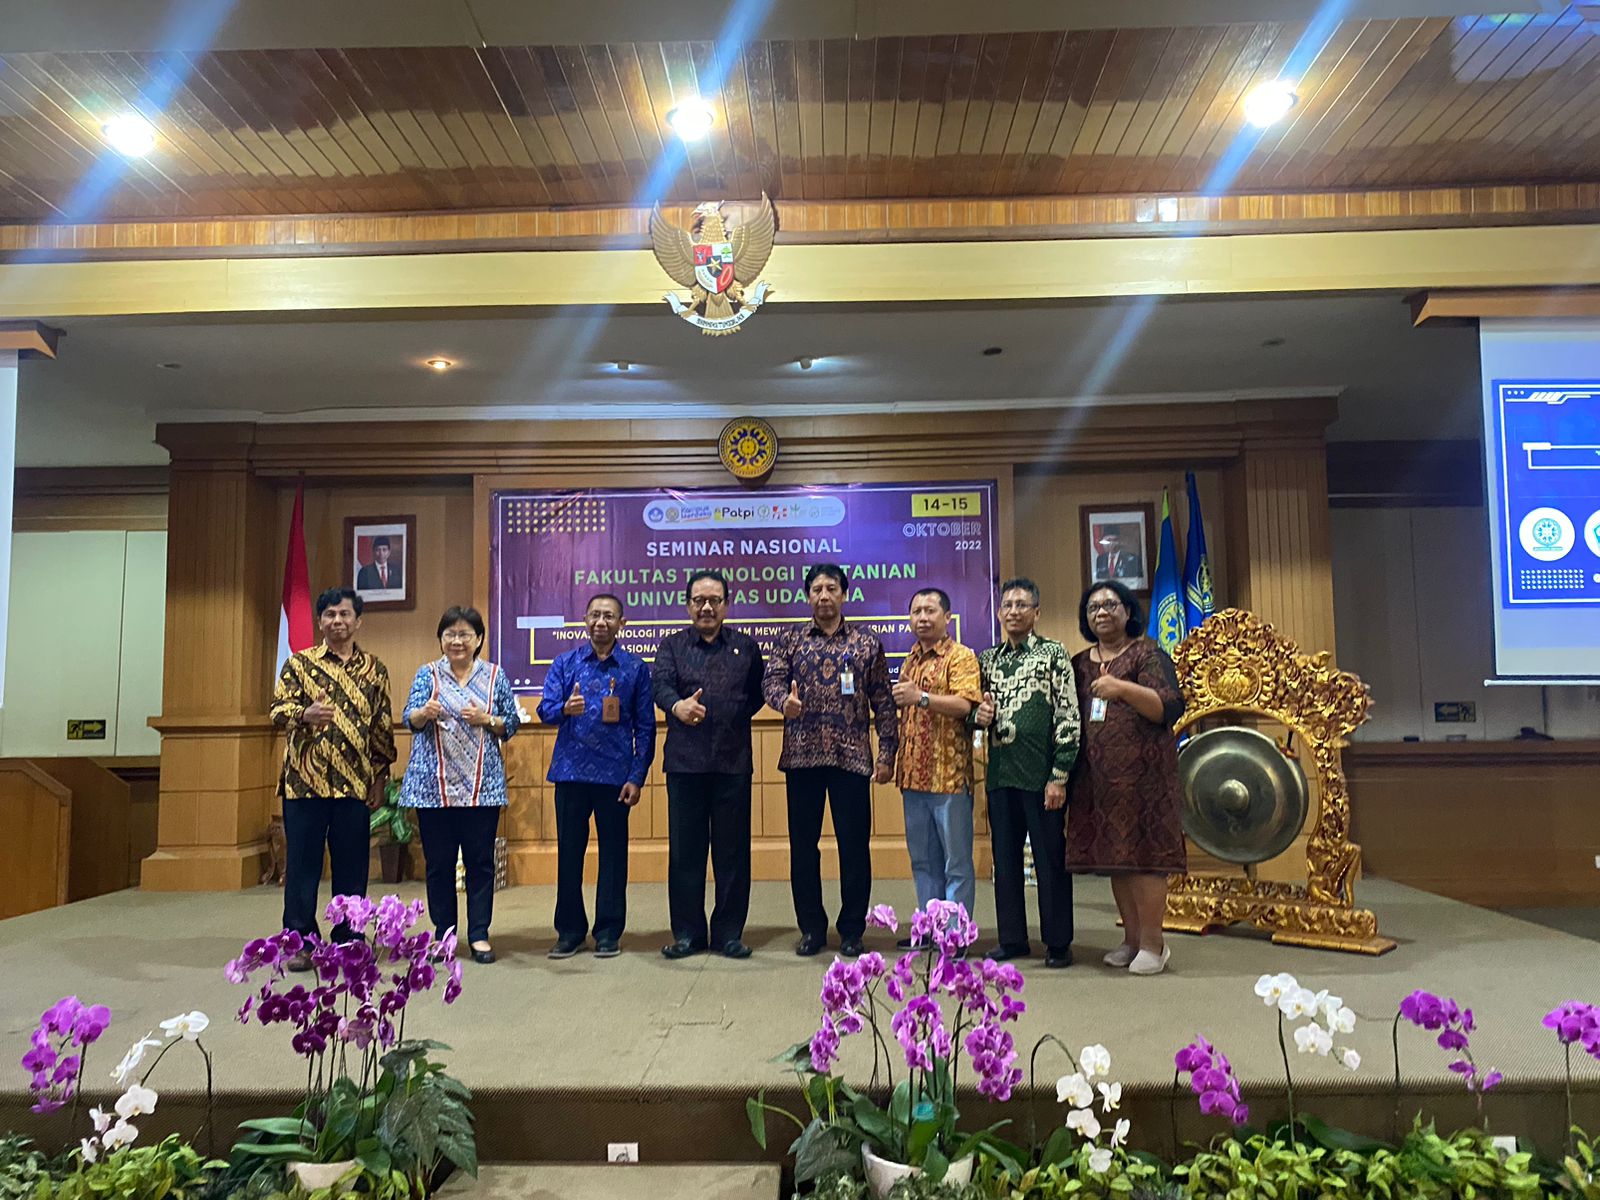 FTP Udayana Selenggarakan Seminar Nasional Perdana Secara Offline Pasca Pandemi, Hadirkan Wagub Bali Sebagai Keynote Speaker